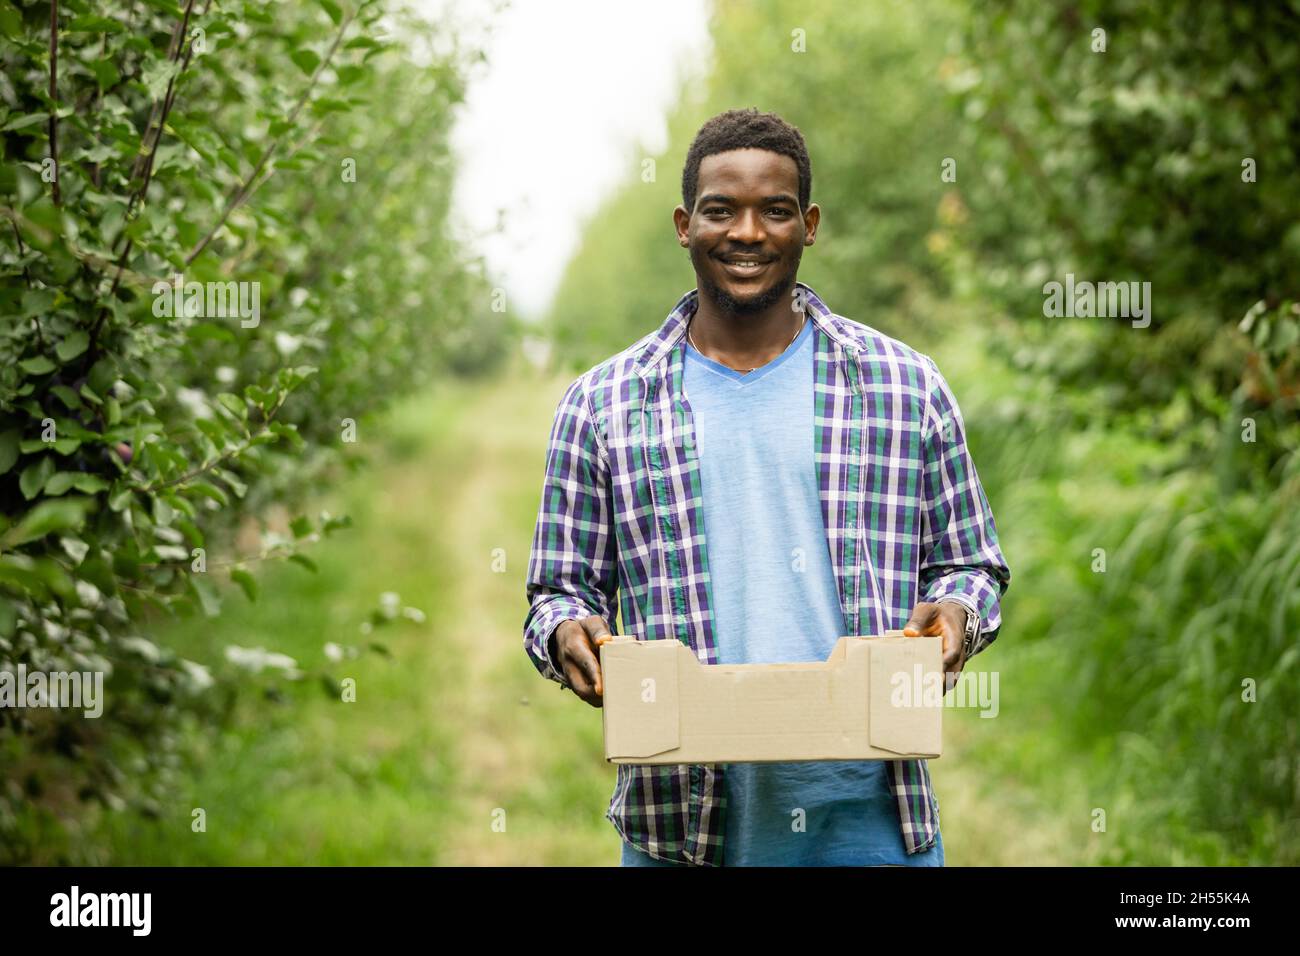 Porträt eines zufriedenen lächelnden afrikanischen Mannes, junger Bauer, der eine Holzkiste mit Obsternte hält. Junger Mann im karierten Hemd in Obstgarten unter pl Stockfoto